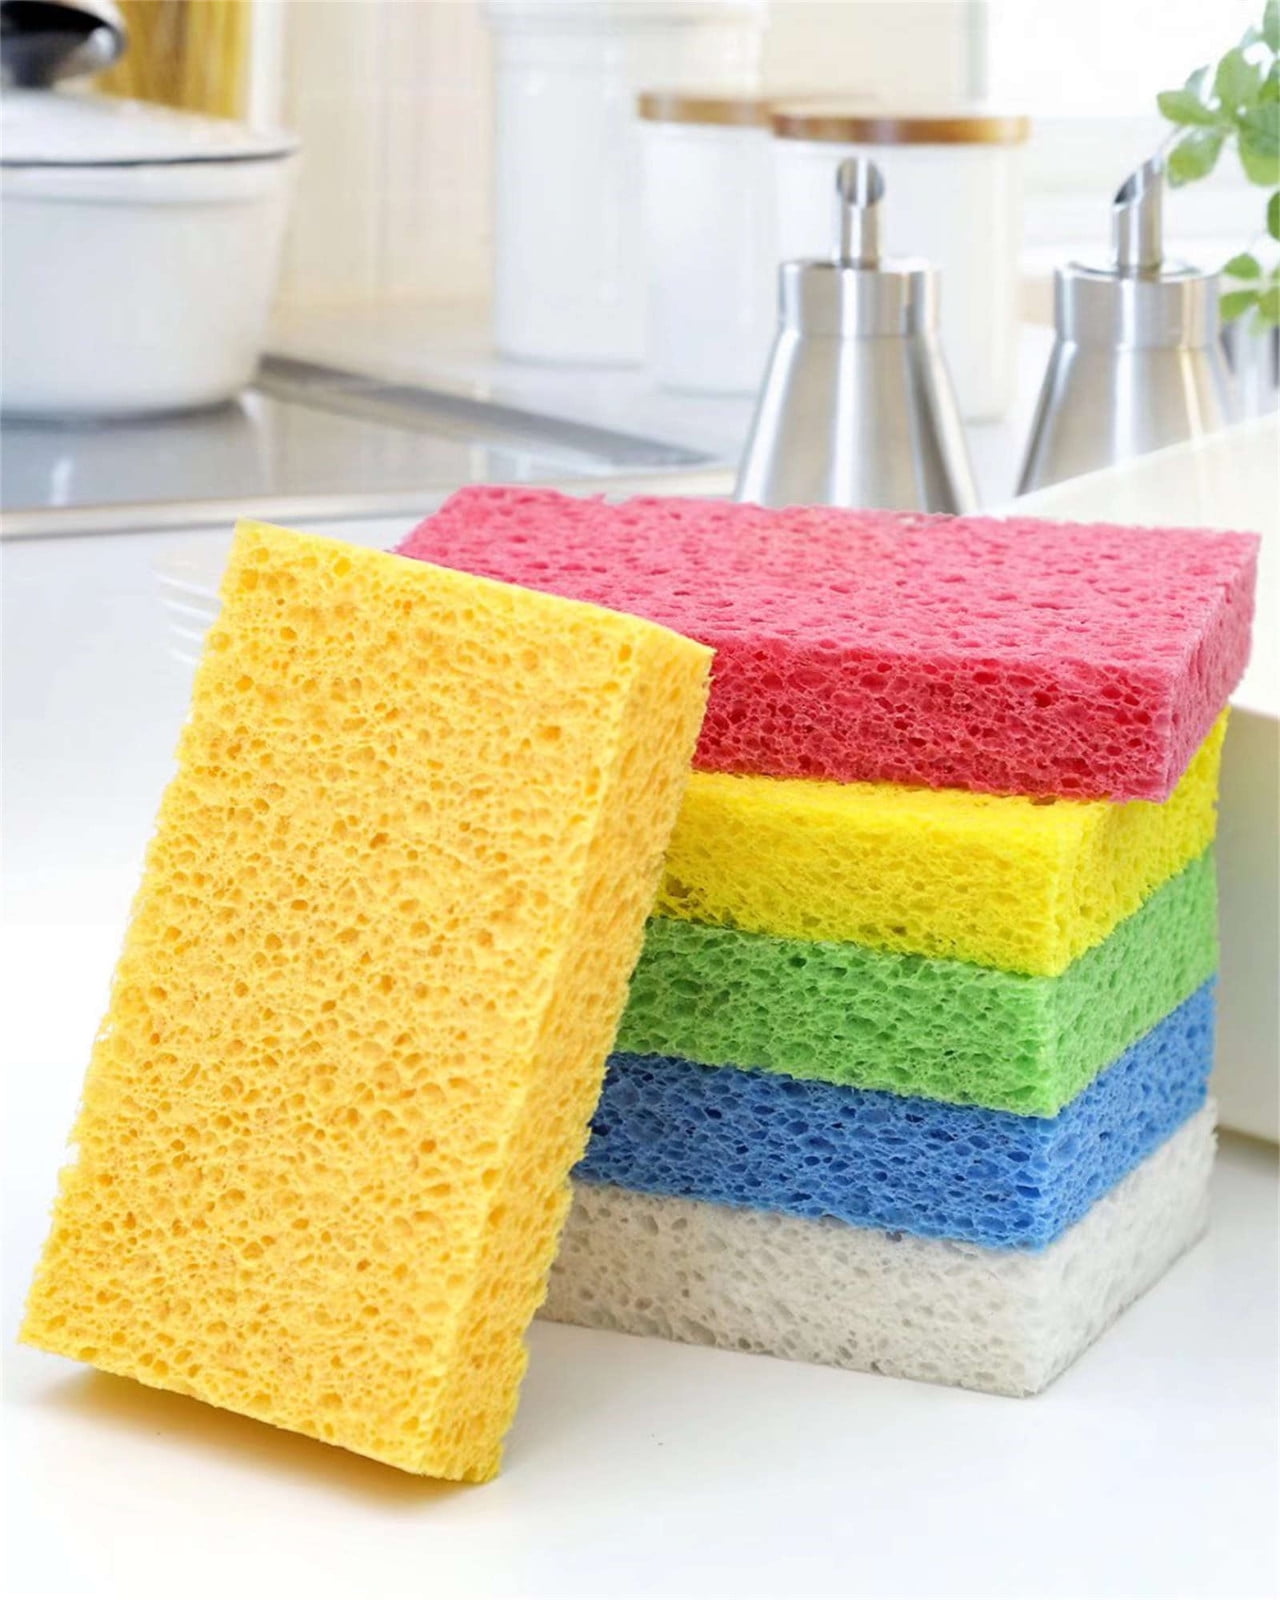 6 x 3.6 x 0.9 Inch JK SP-T22 Large Sponge, Kitchen Sponges, Handy Sponges,  Cellulose Sponges, Dish Washing Sponge, Natural Sponge, Car Washing Sponge